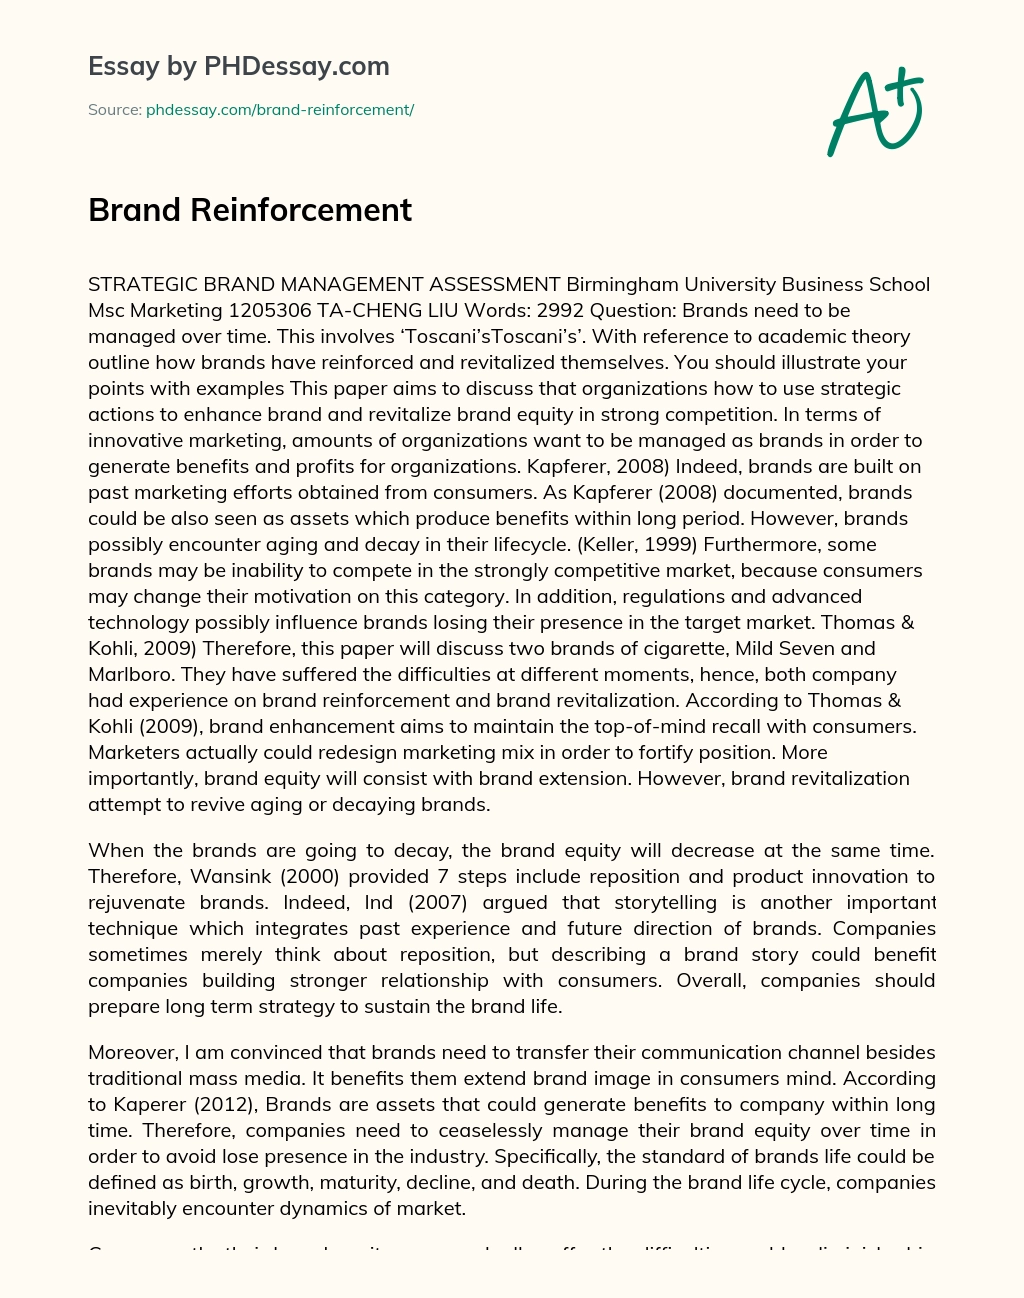 Brand Reinforcement Organization essay